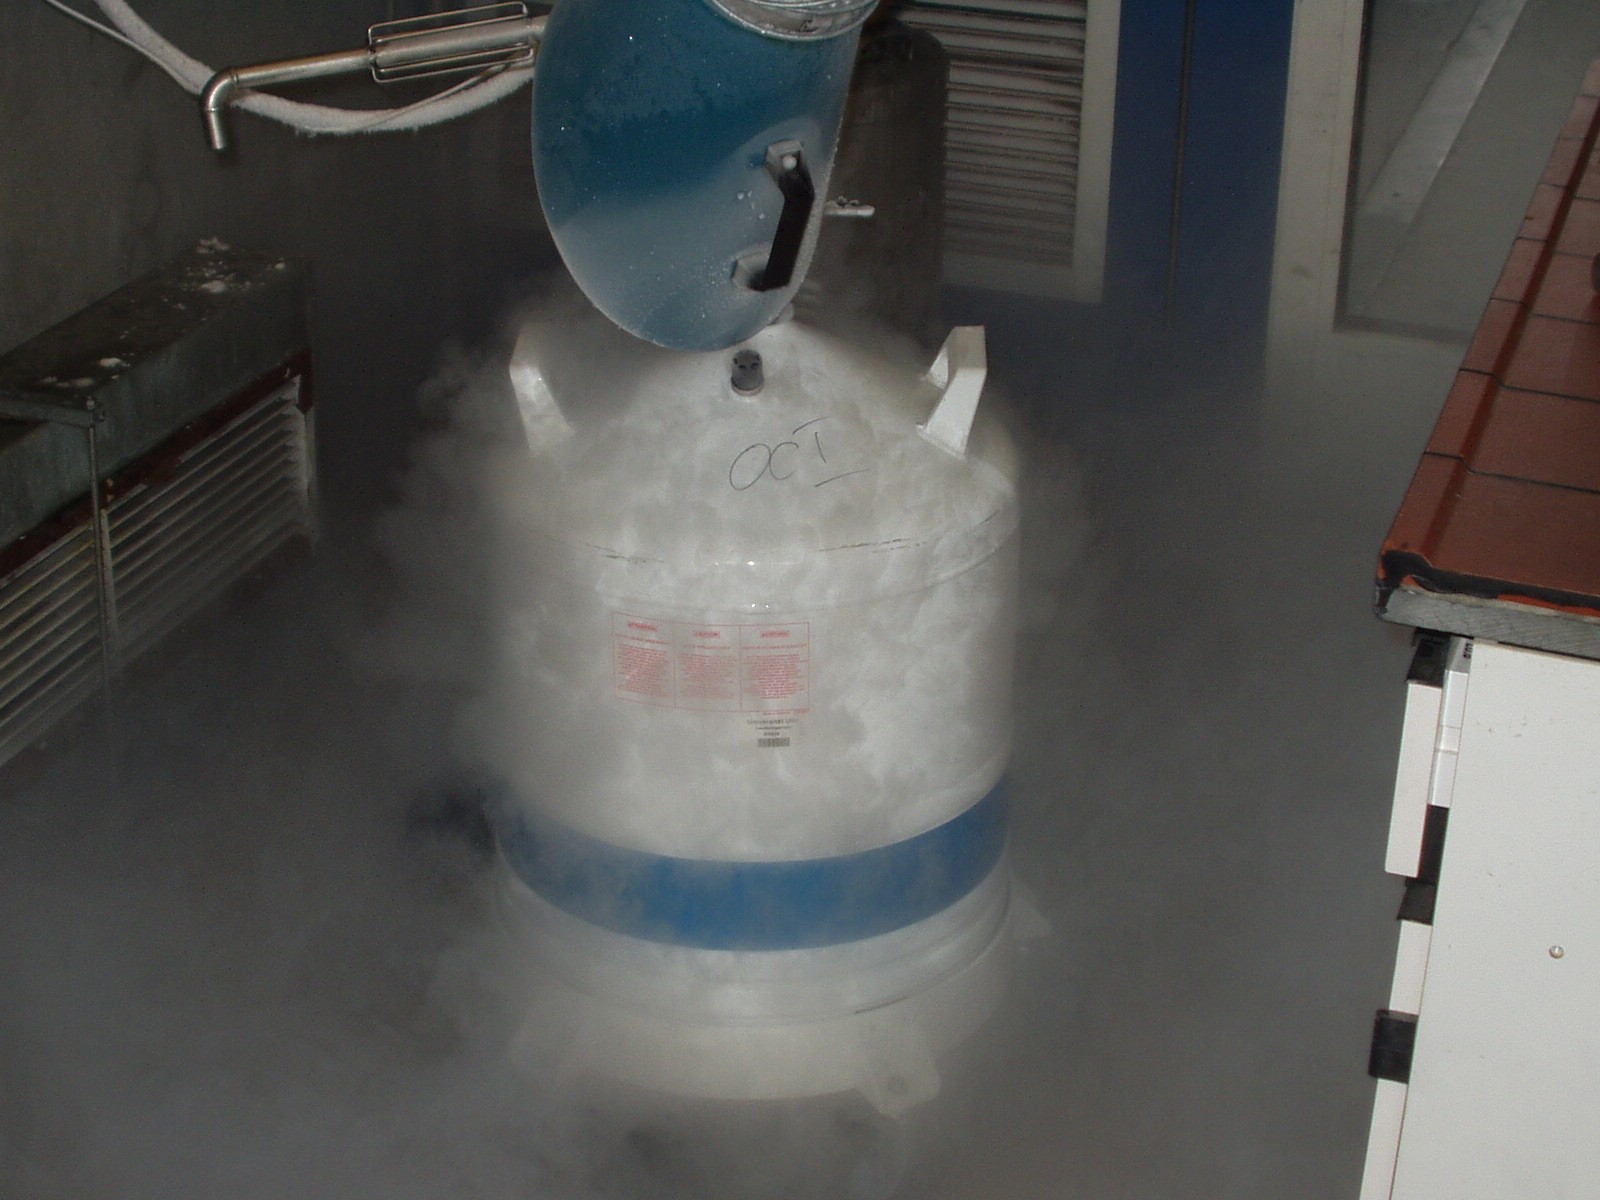 Nitrogênio líquido é usado na técnica de criogenia (congelamento de corpos humanos) (Foto: PxHere/Creative Commons)